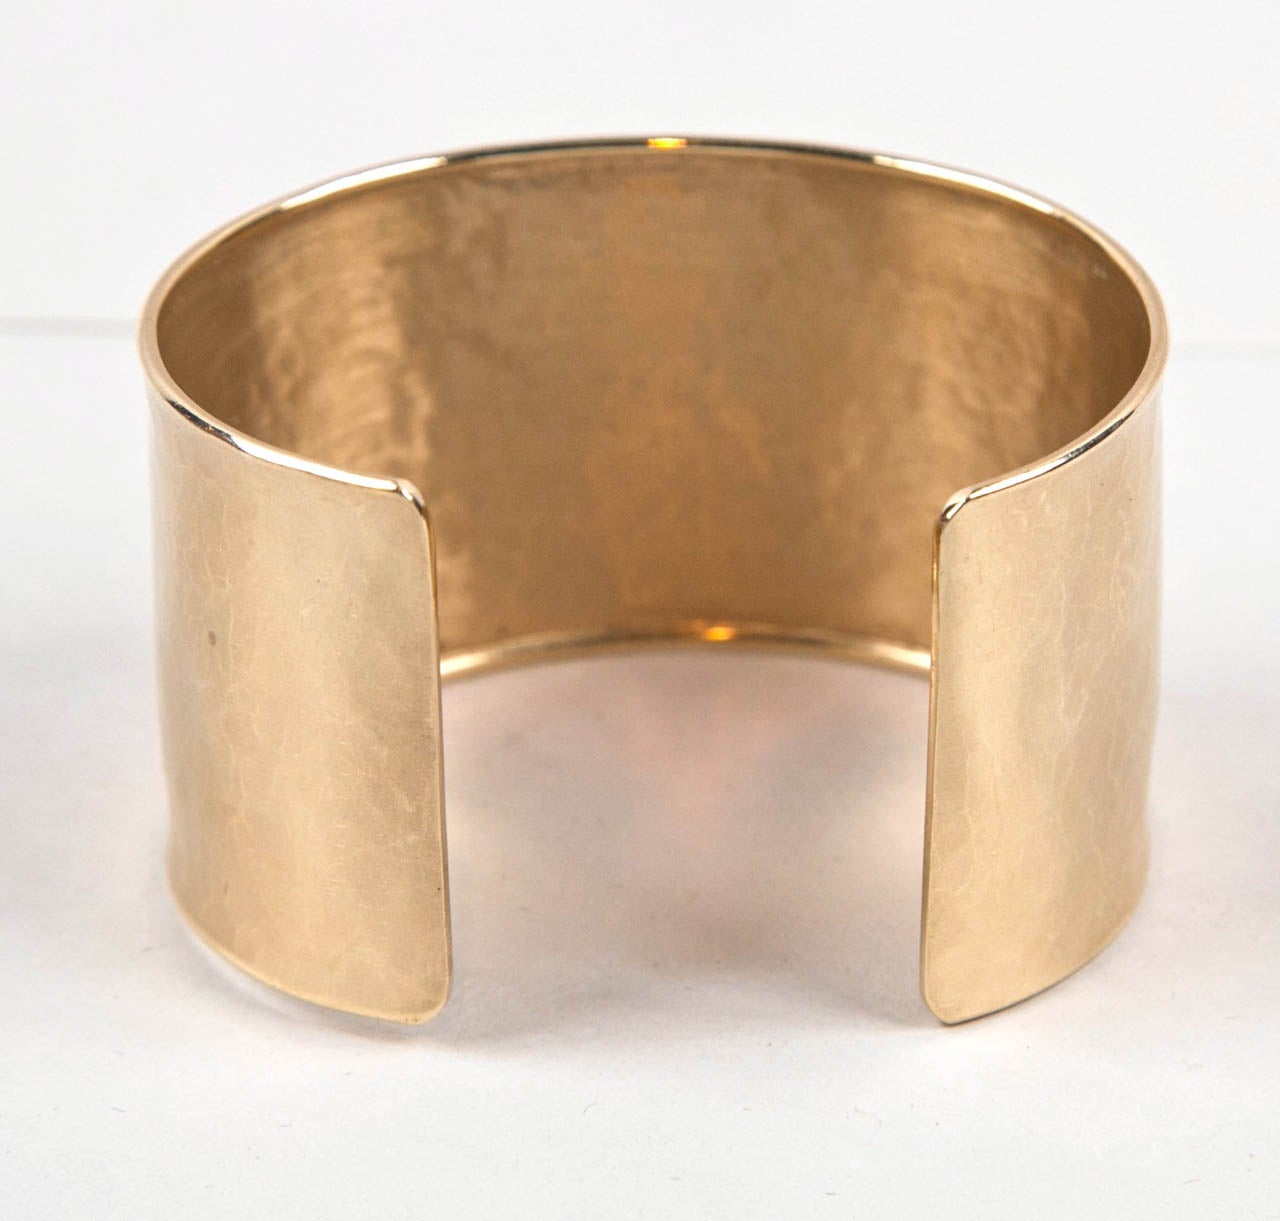 Handmade Pounded Gold Cuff Bracelet, 14k